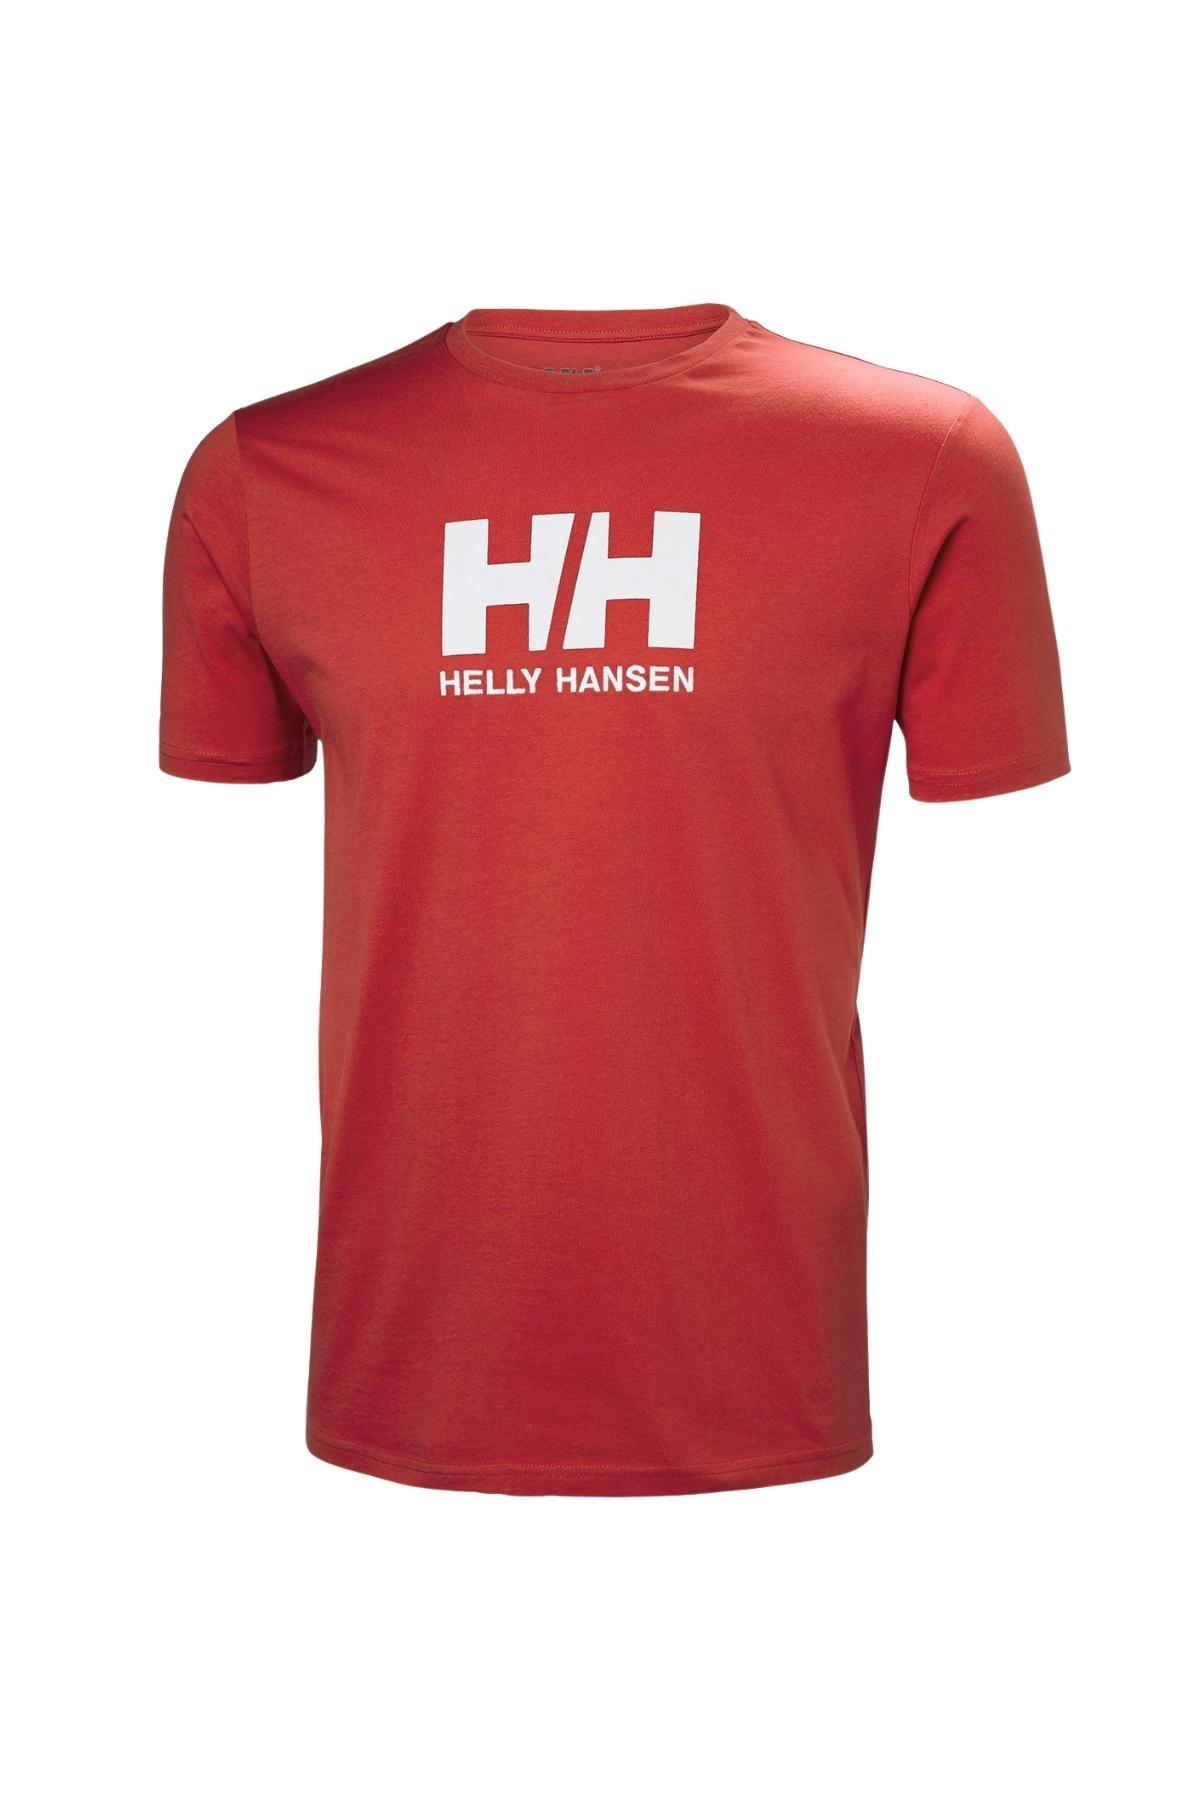 Helly Hansen Helly Hansen HHA.33979 - HH Logo Erkek T-Shirt